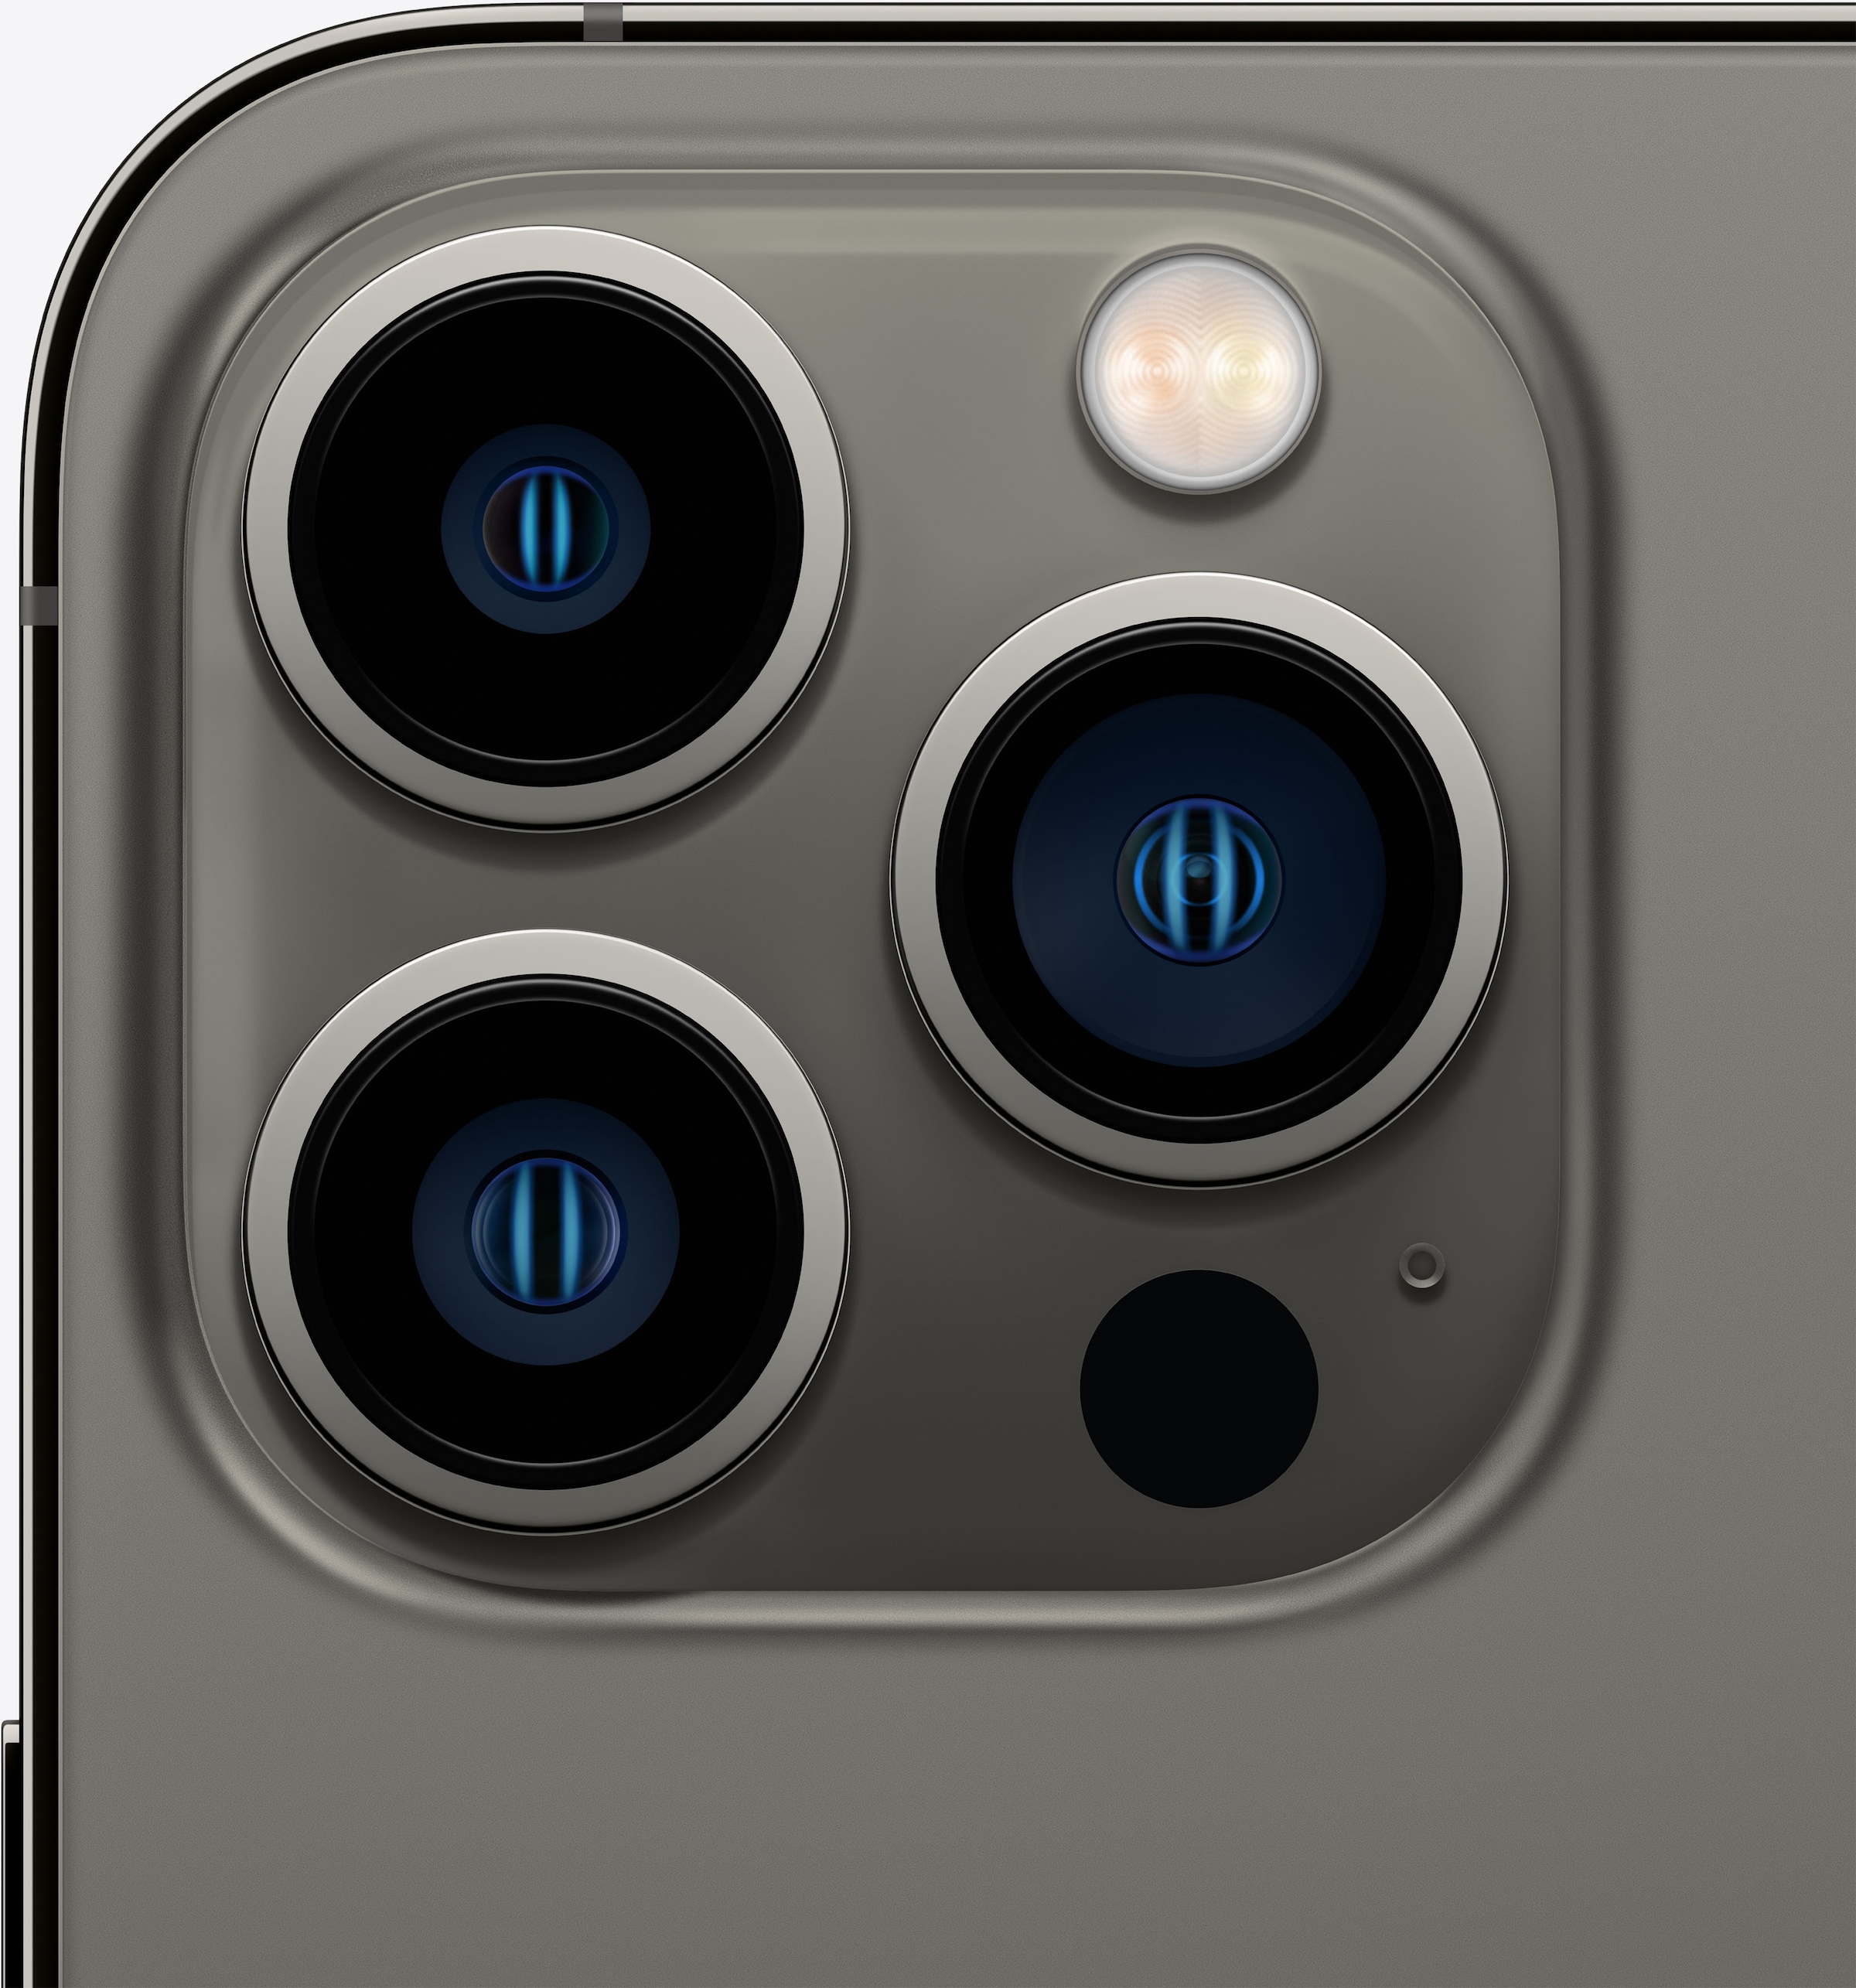 Apple Smartphone »iPhone 13 Pro Max«, Sierra Blue, 17 cm/6,7 Zoll, 128 GB  Speicherplatz, 12 MP Kamera auf Raten kaufen